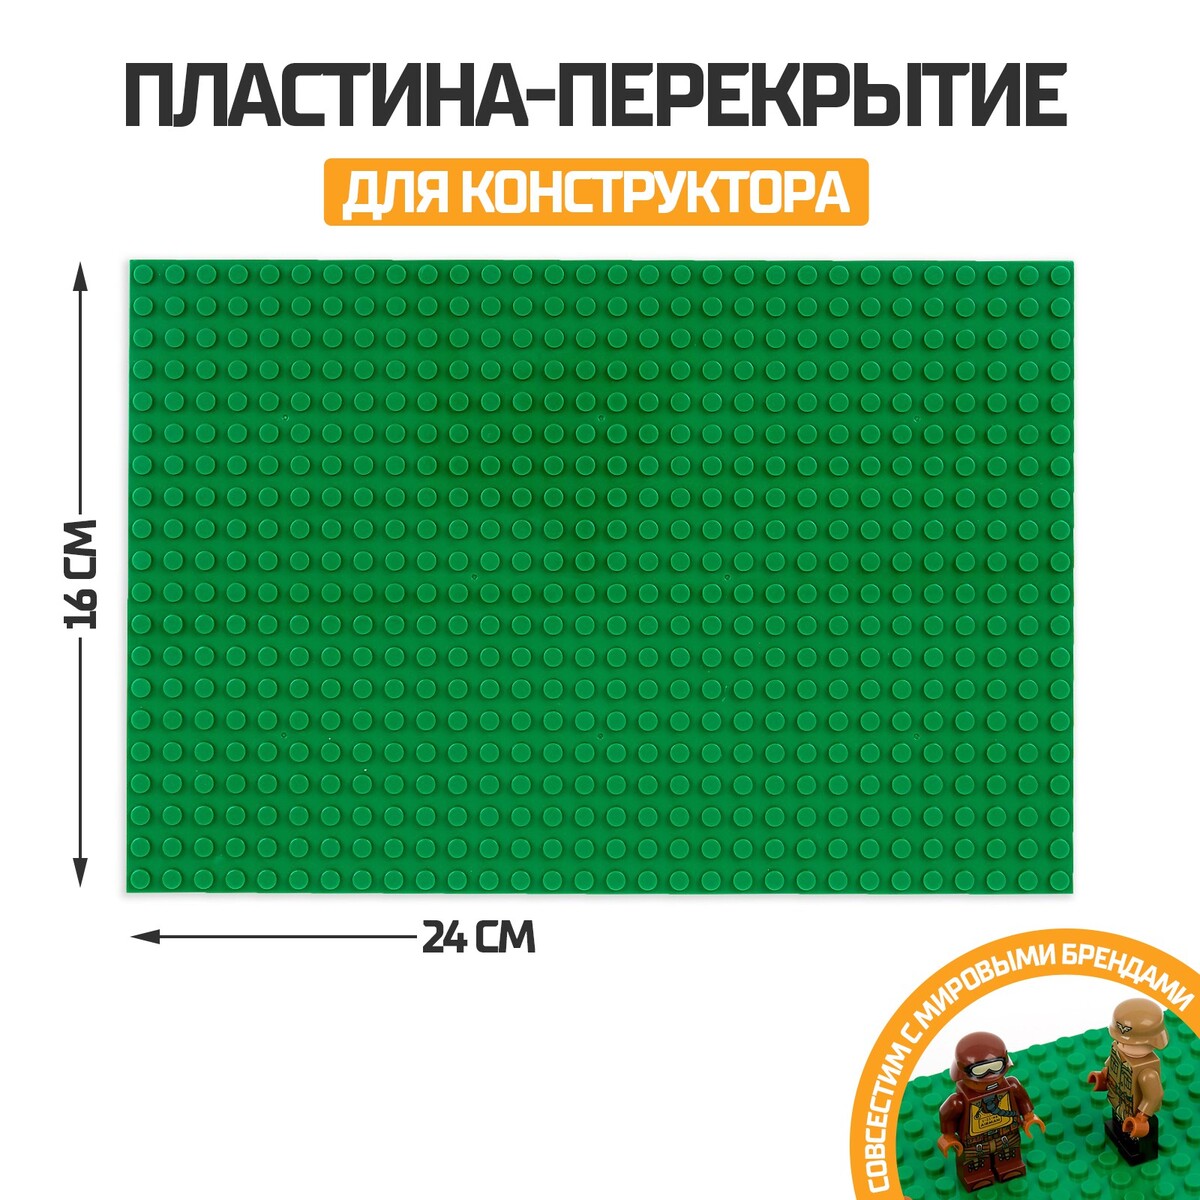 Пластина-перекрытие для конструктора, 16 х 24 см, цвет зеленый пластина перекрытие для конструктора 16 х 24 см зеленый